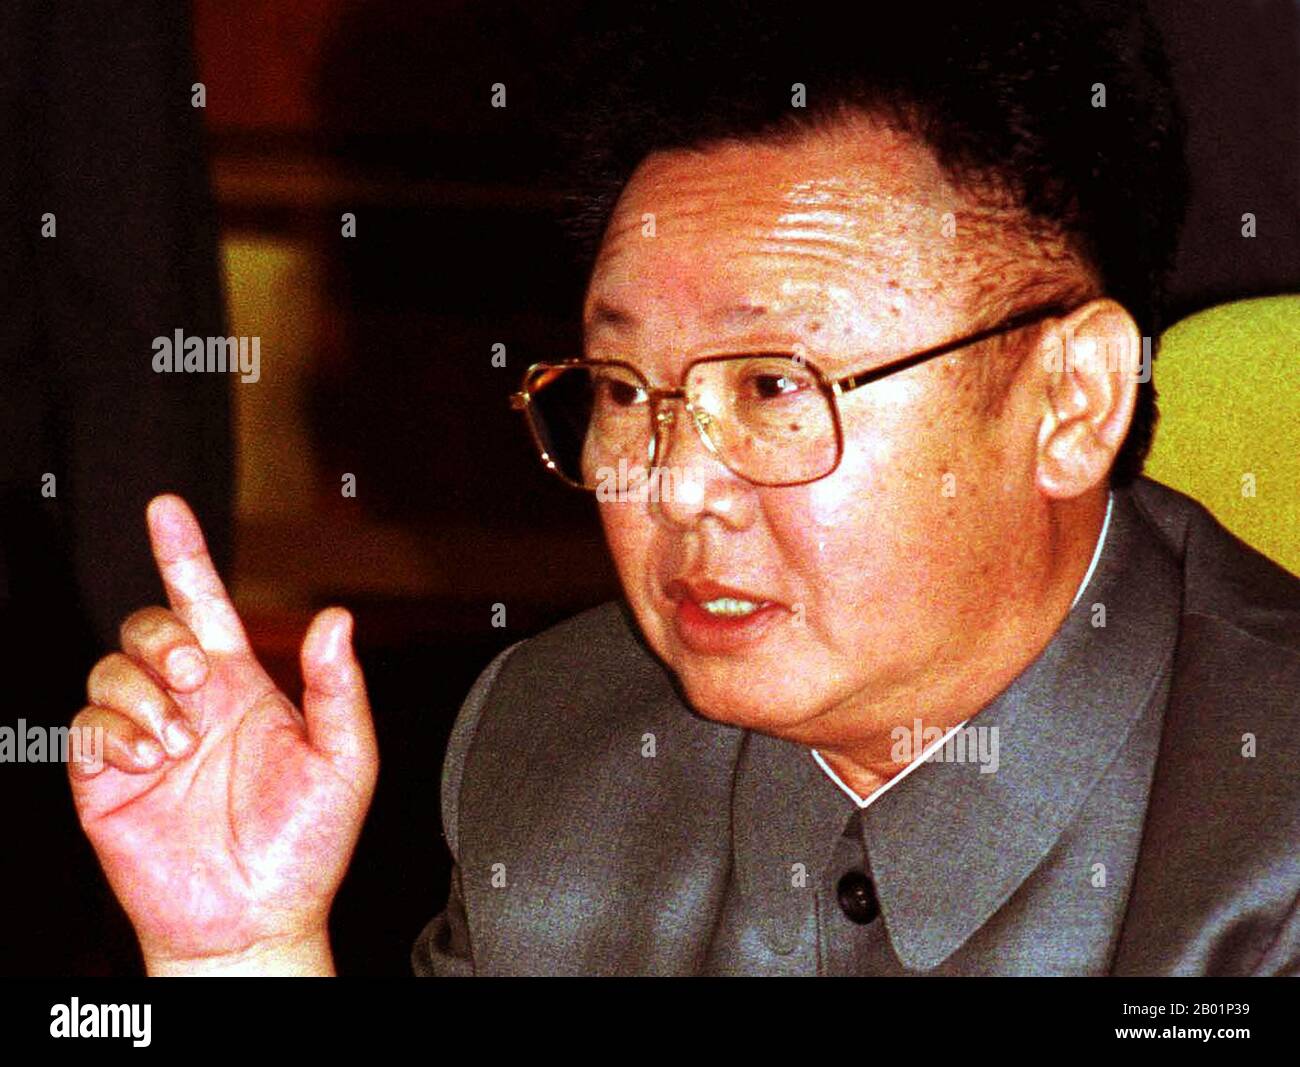 Corea: Leader nordcoreano Kim Jong il (16 febbraio 1941/1942 - 17 dicembre 2011), Pyongyang. Foto di YONHAP/POOL (licenza CC BY-SA 3,0), 2000. Kim Jong-il è stato il leader supremo della Corea del Nord (RPDC) dal 1994 al 2011. Succedette a suo padre e fondatore della RPDC Kim il-sung dopo la morte del vecchio Kim nel 1994. Kim Jong-il era il segretario generale del Partito dei lavoratori di Corea, presidente della Commissione nazionale di difesa della Corea del Nord e il comandante supremo dell'esercito popolare coreano, il quarto esercito permanente più grande del mondo. Foto Stock